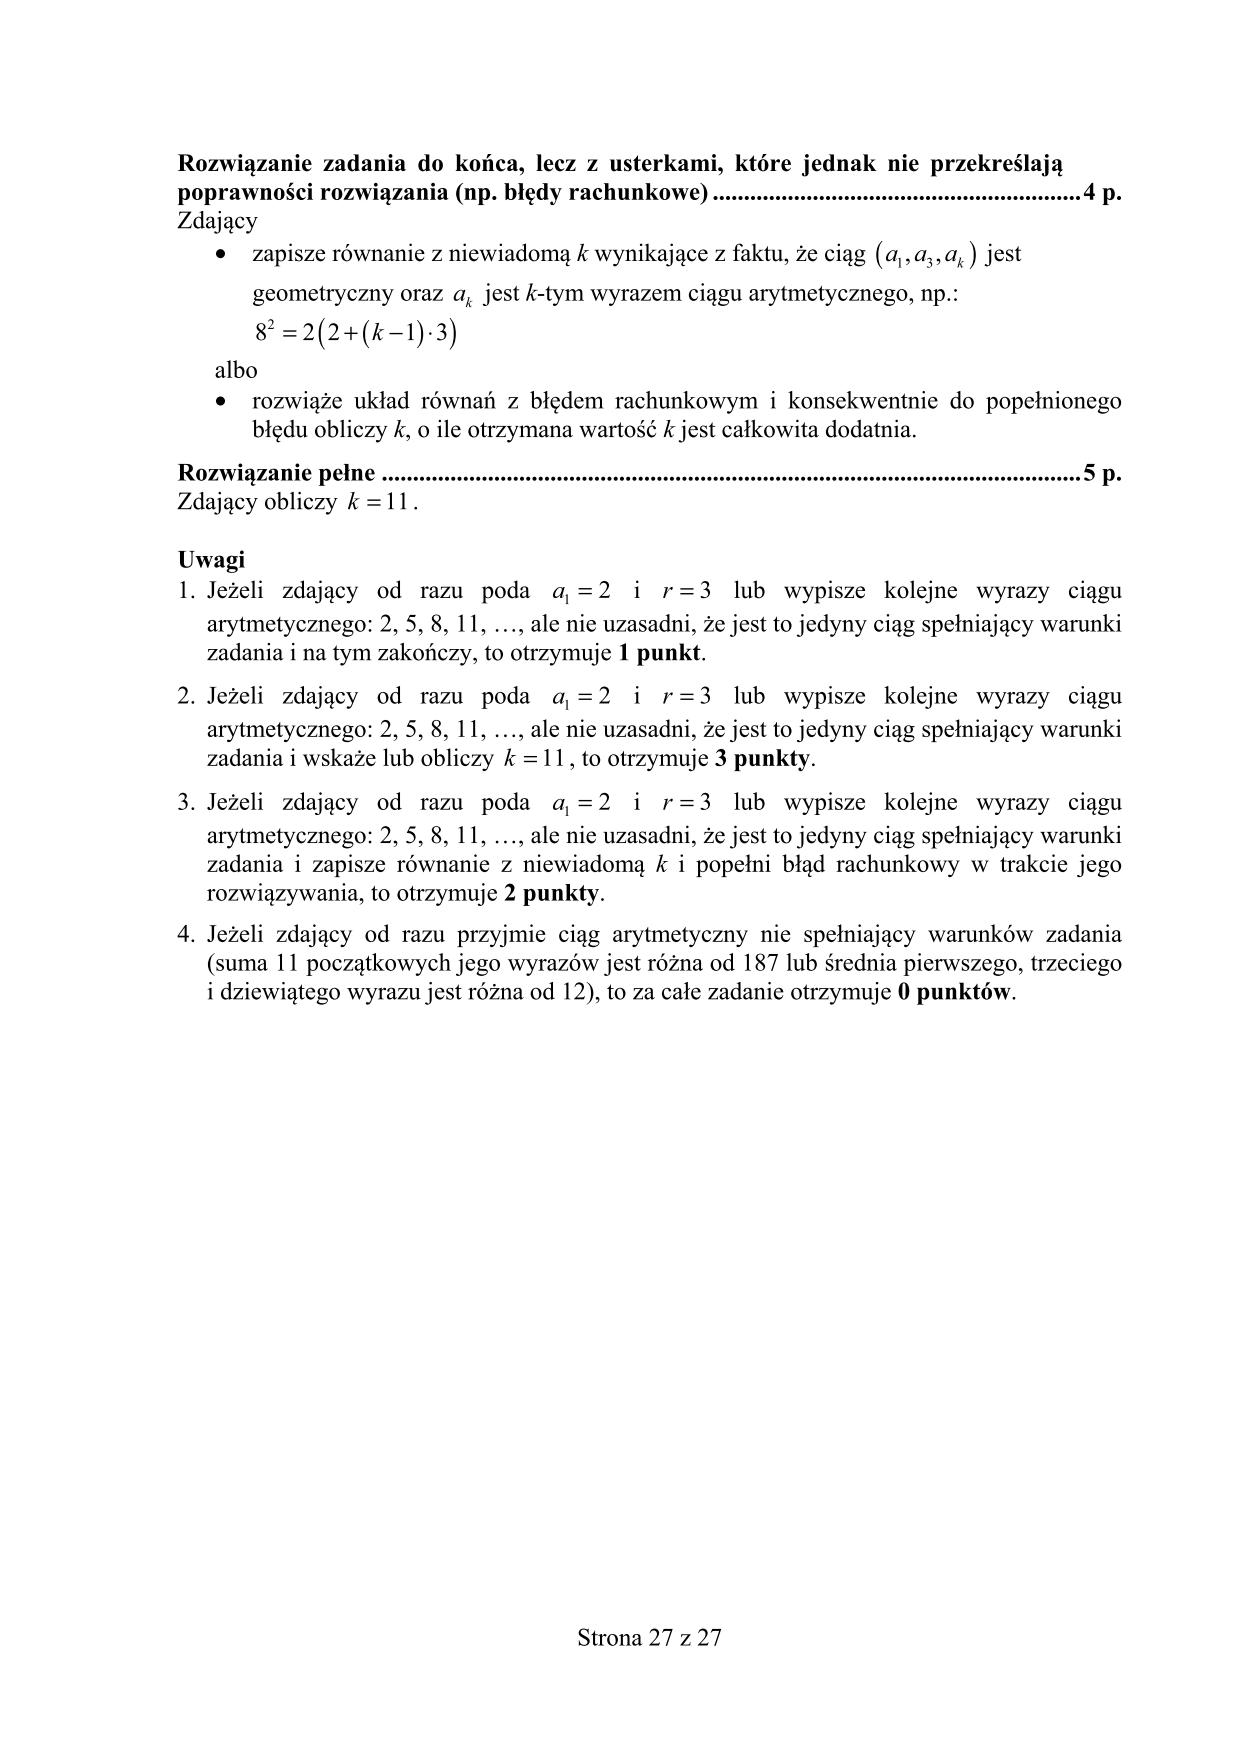 odpowiedzi-matematyka-poziom-podstawowy-matura-2015-27